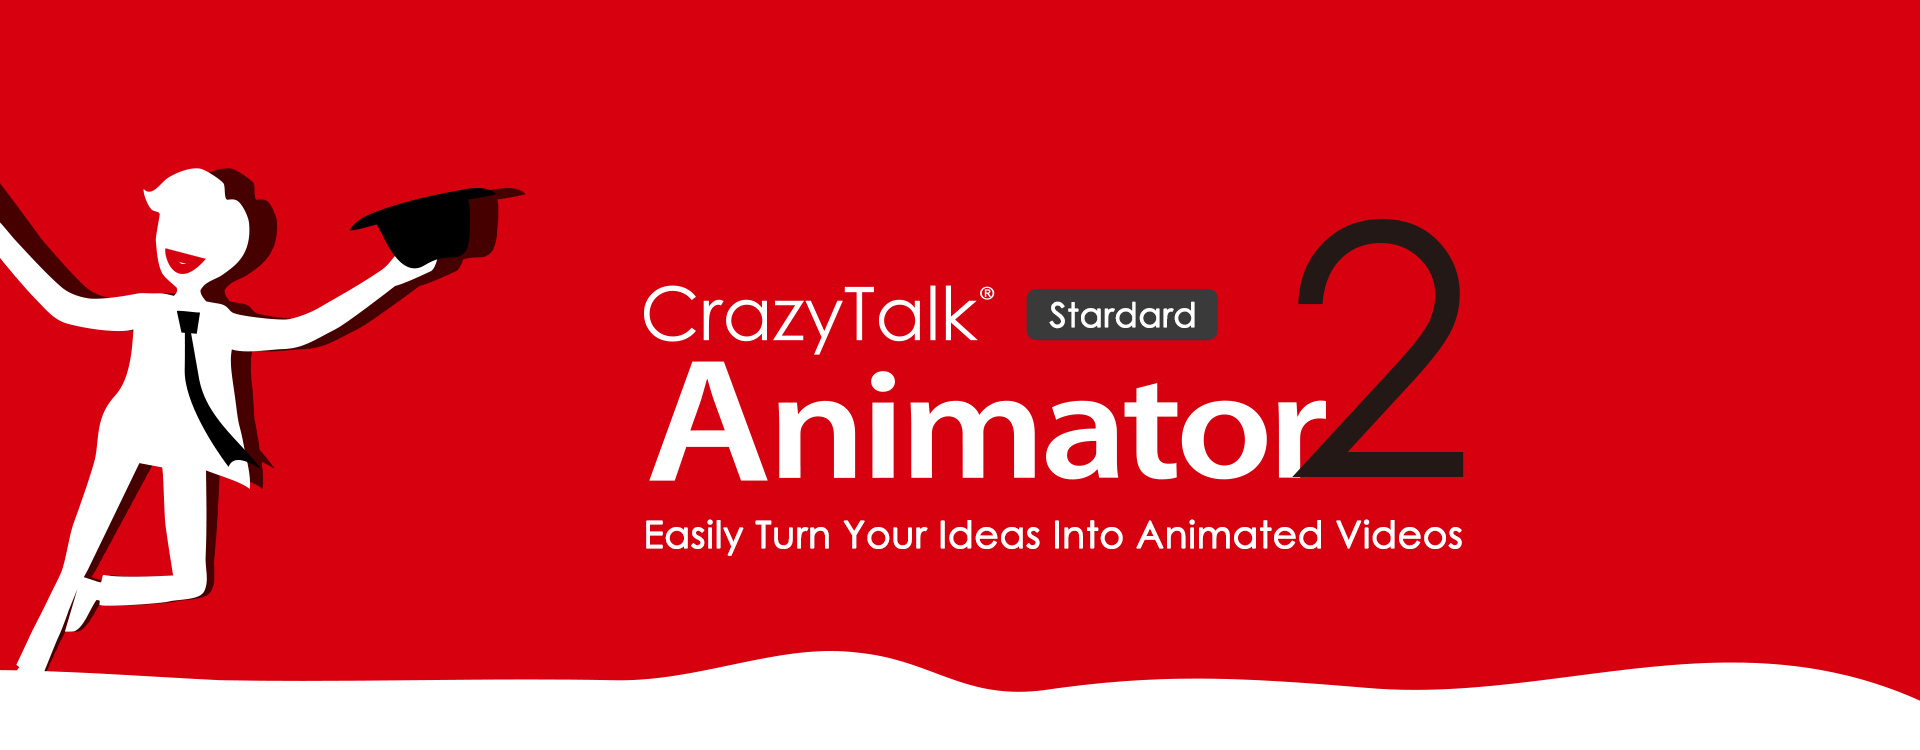 crazytalk animator 2 doc